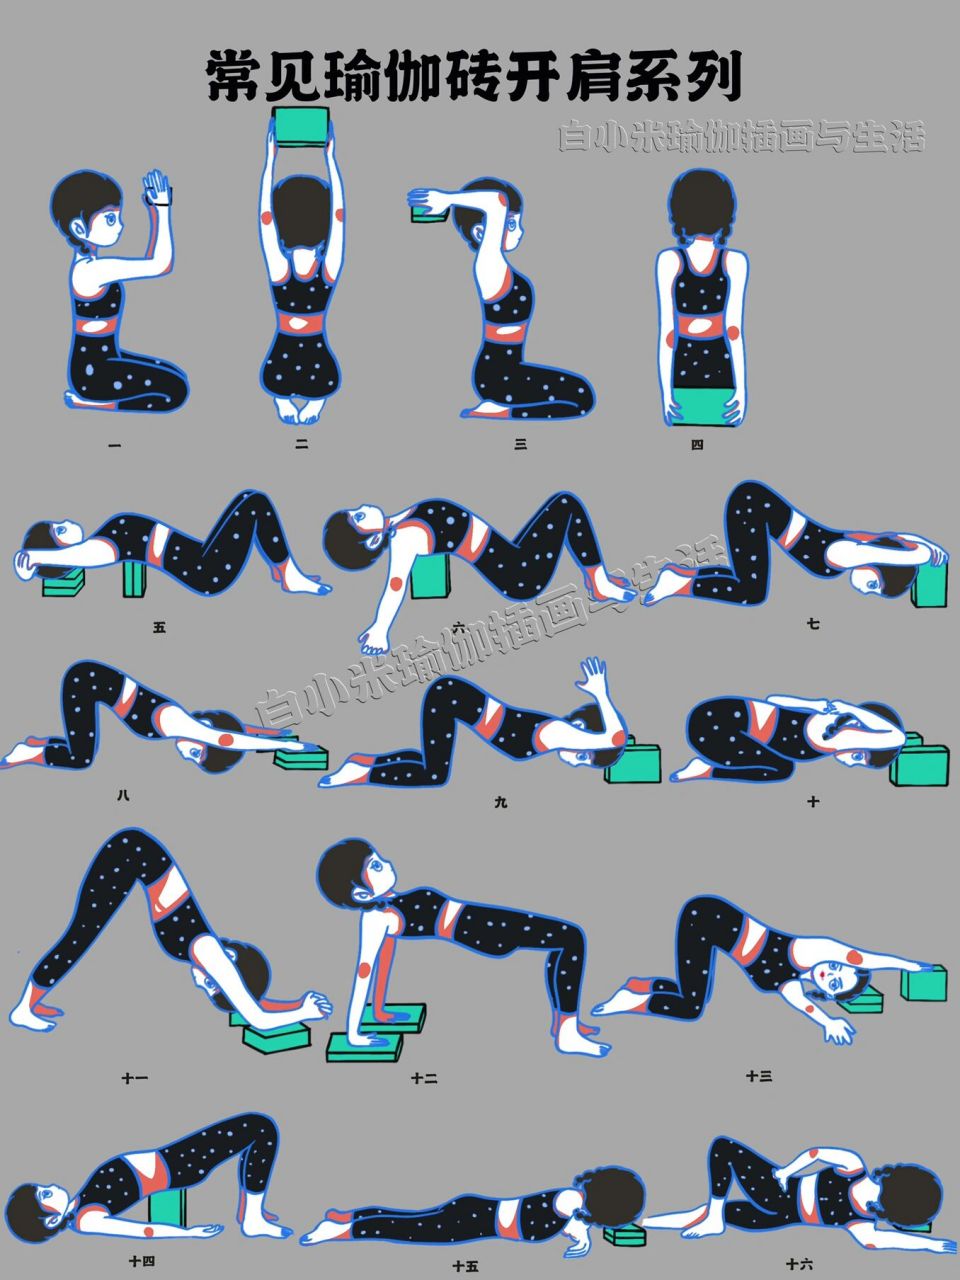 瑜伽砖用法图片